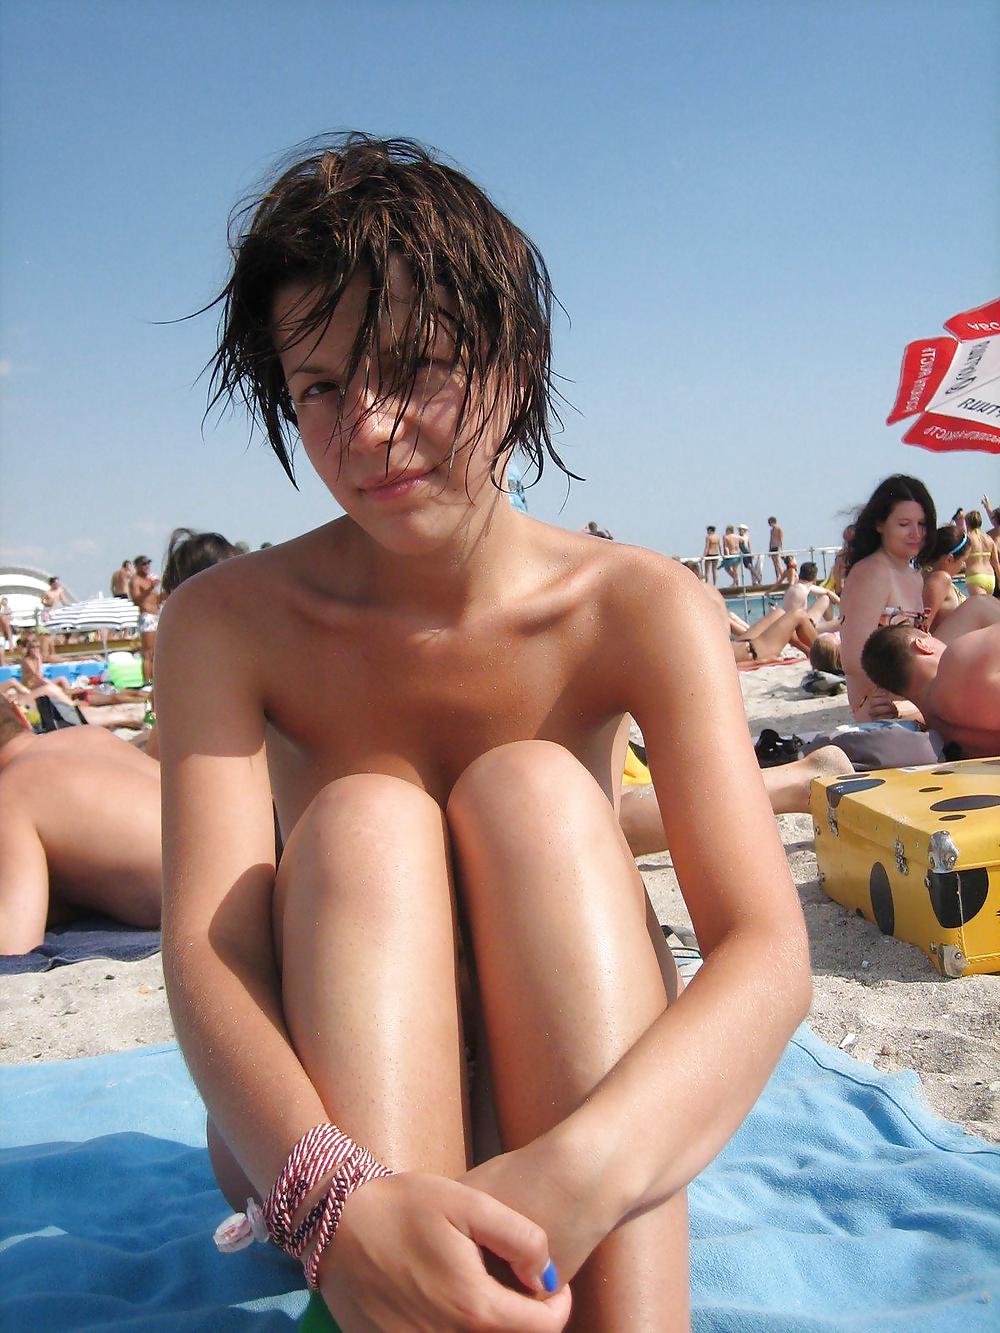 Fotos de desnudos mixtos en la playa 2
 #4237705